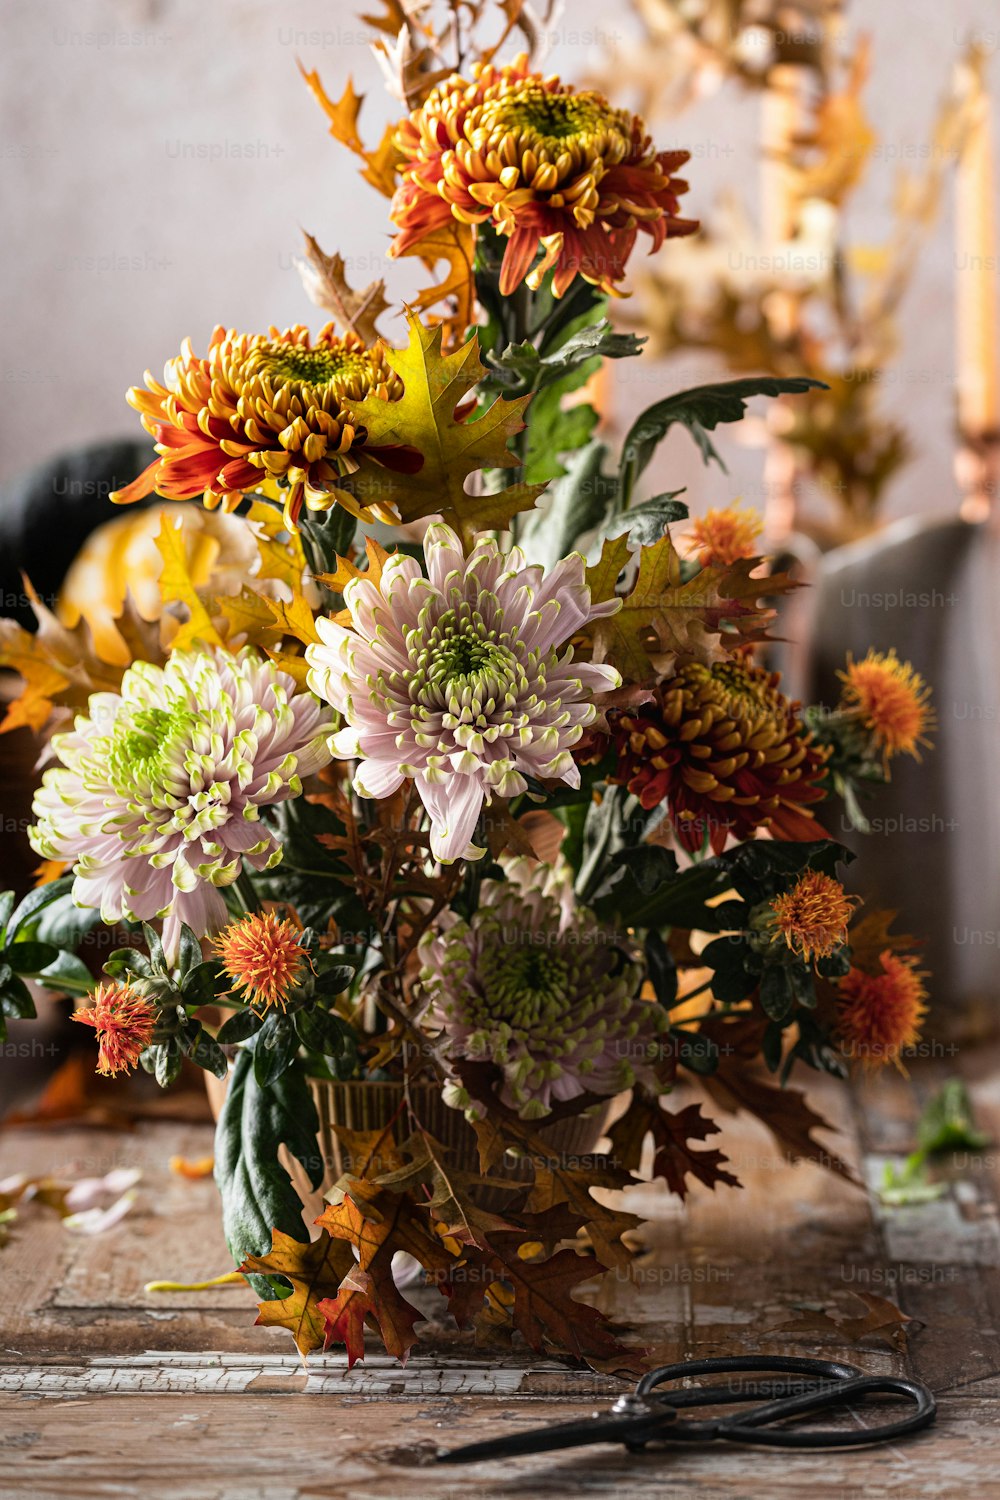 eine Vase gefüllt mit vielen Blumen neben einer Schere